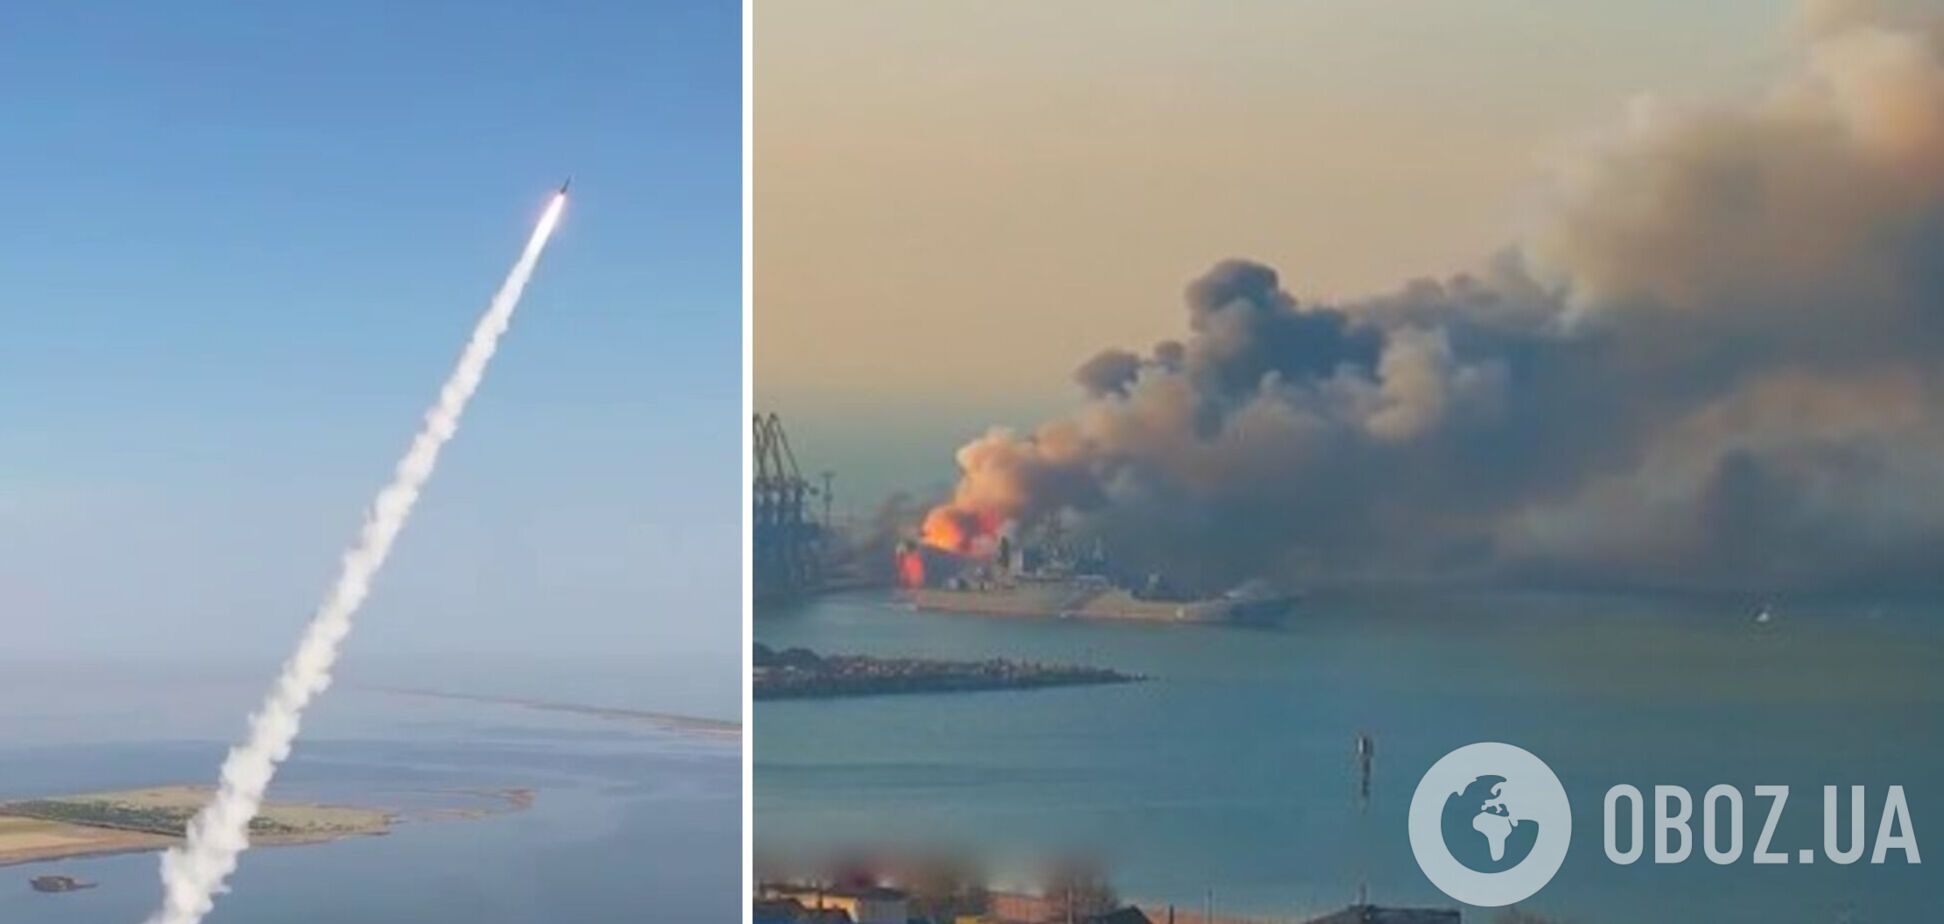 Залужный напомнил, как украинская ракета поразила корабль РФ 'Саратов' в порту Бердянска